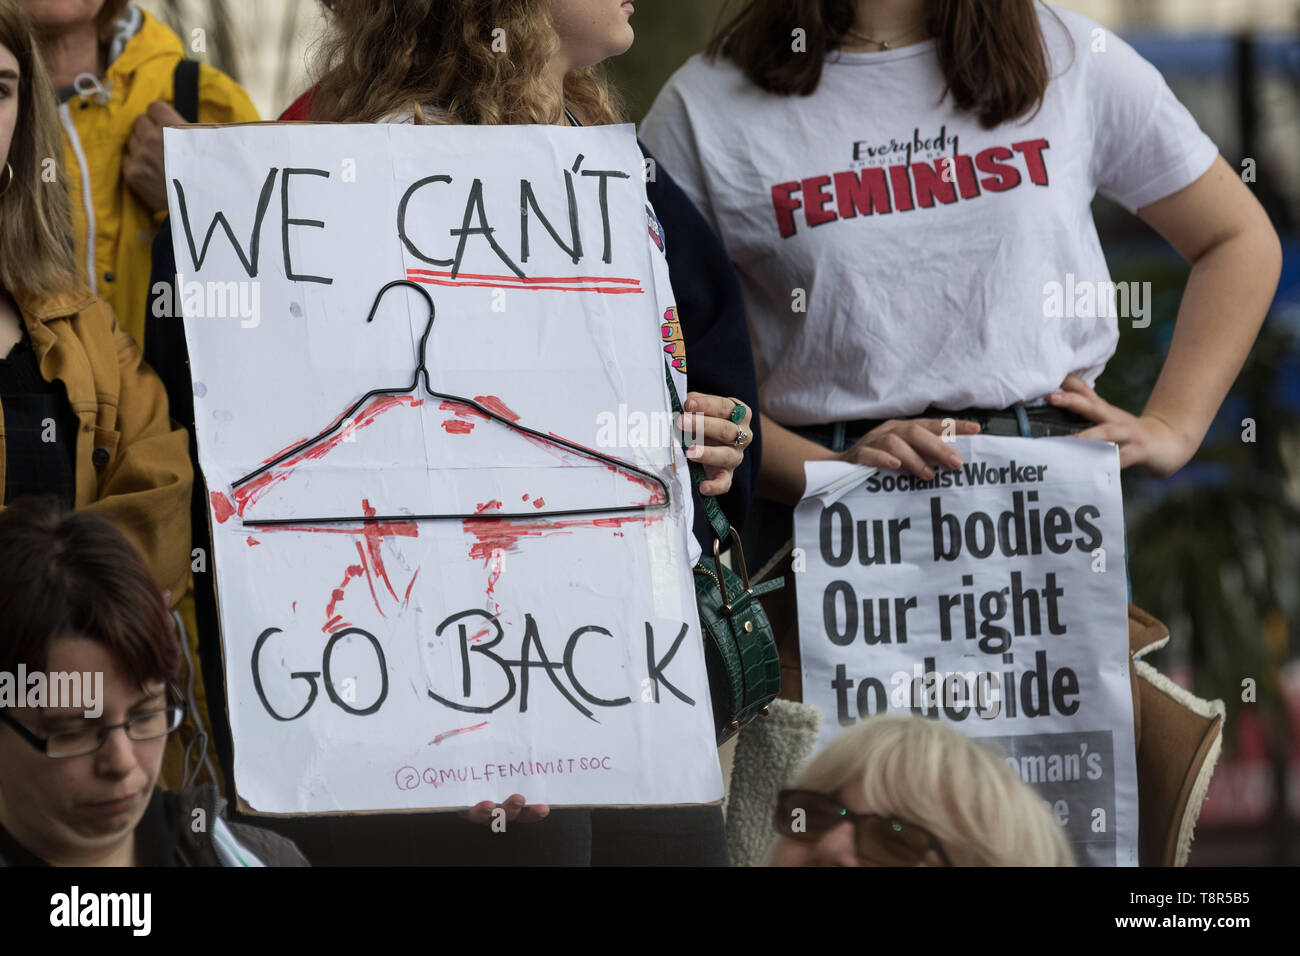 La mujer grupos Pro-Choice incluyendo hermana partidario, el derecho al aborto y a los médicos en el Reino Unido para la elección del Reino Unido se oponen a manifestantes anti-abortista en Westminster. Foto de stock